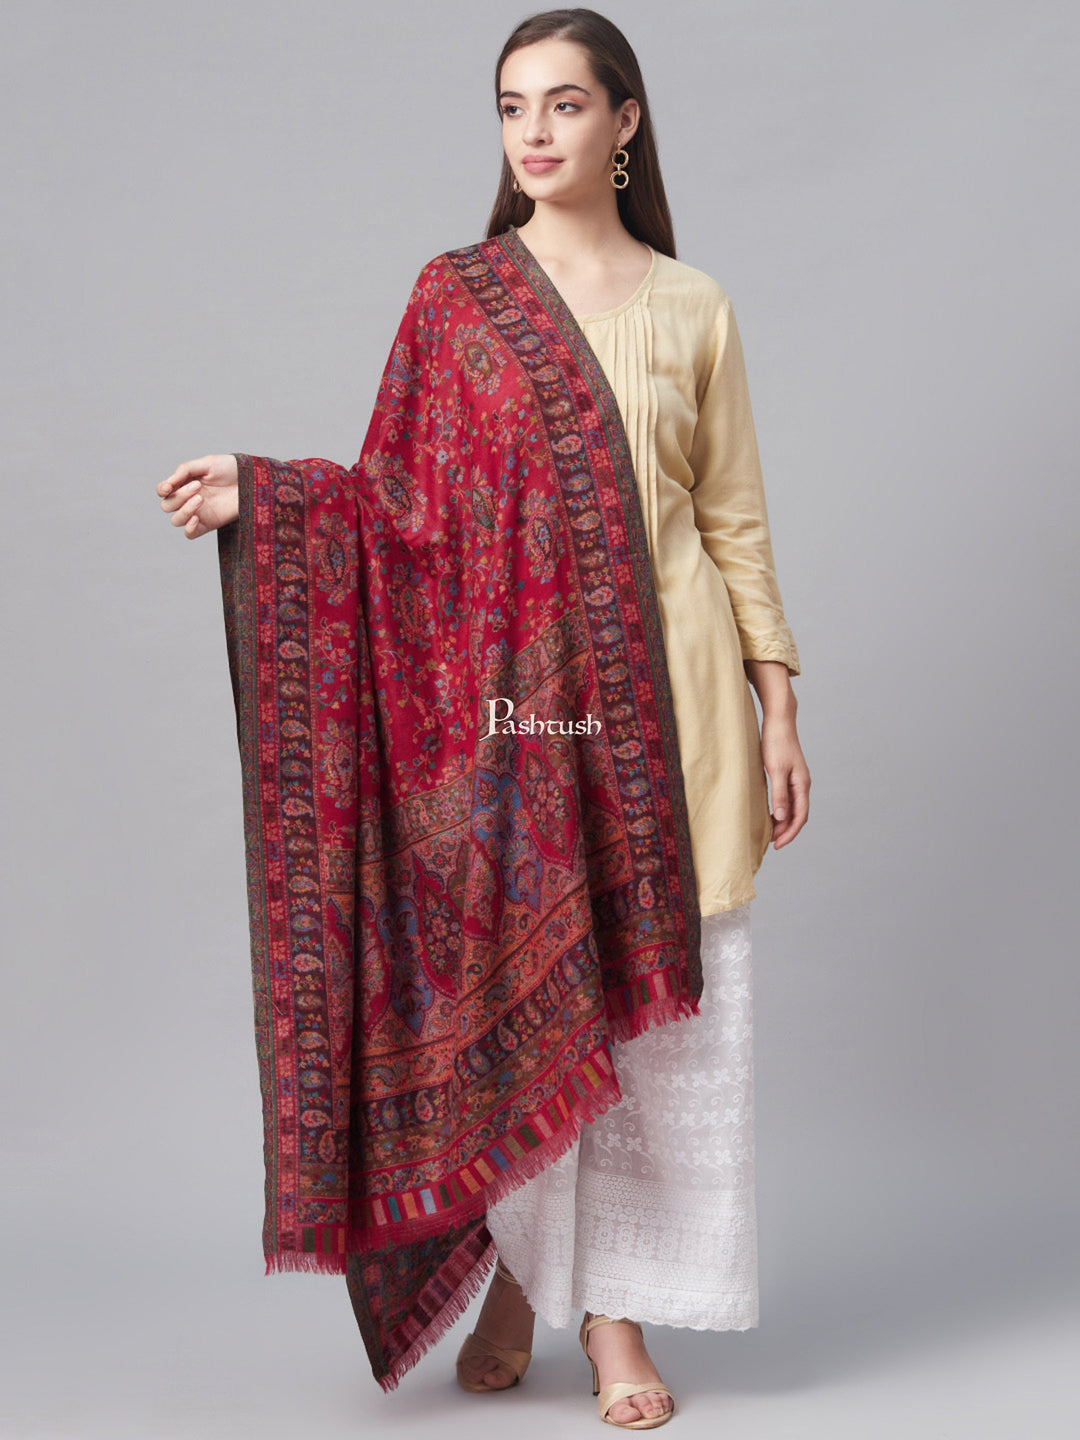 Pashtush India Womens Shawls Pashtush Womens Pure Wool Ethnic Shawl, With Woolmark Certificate